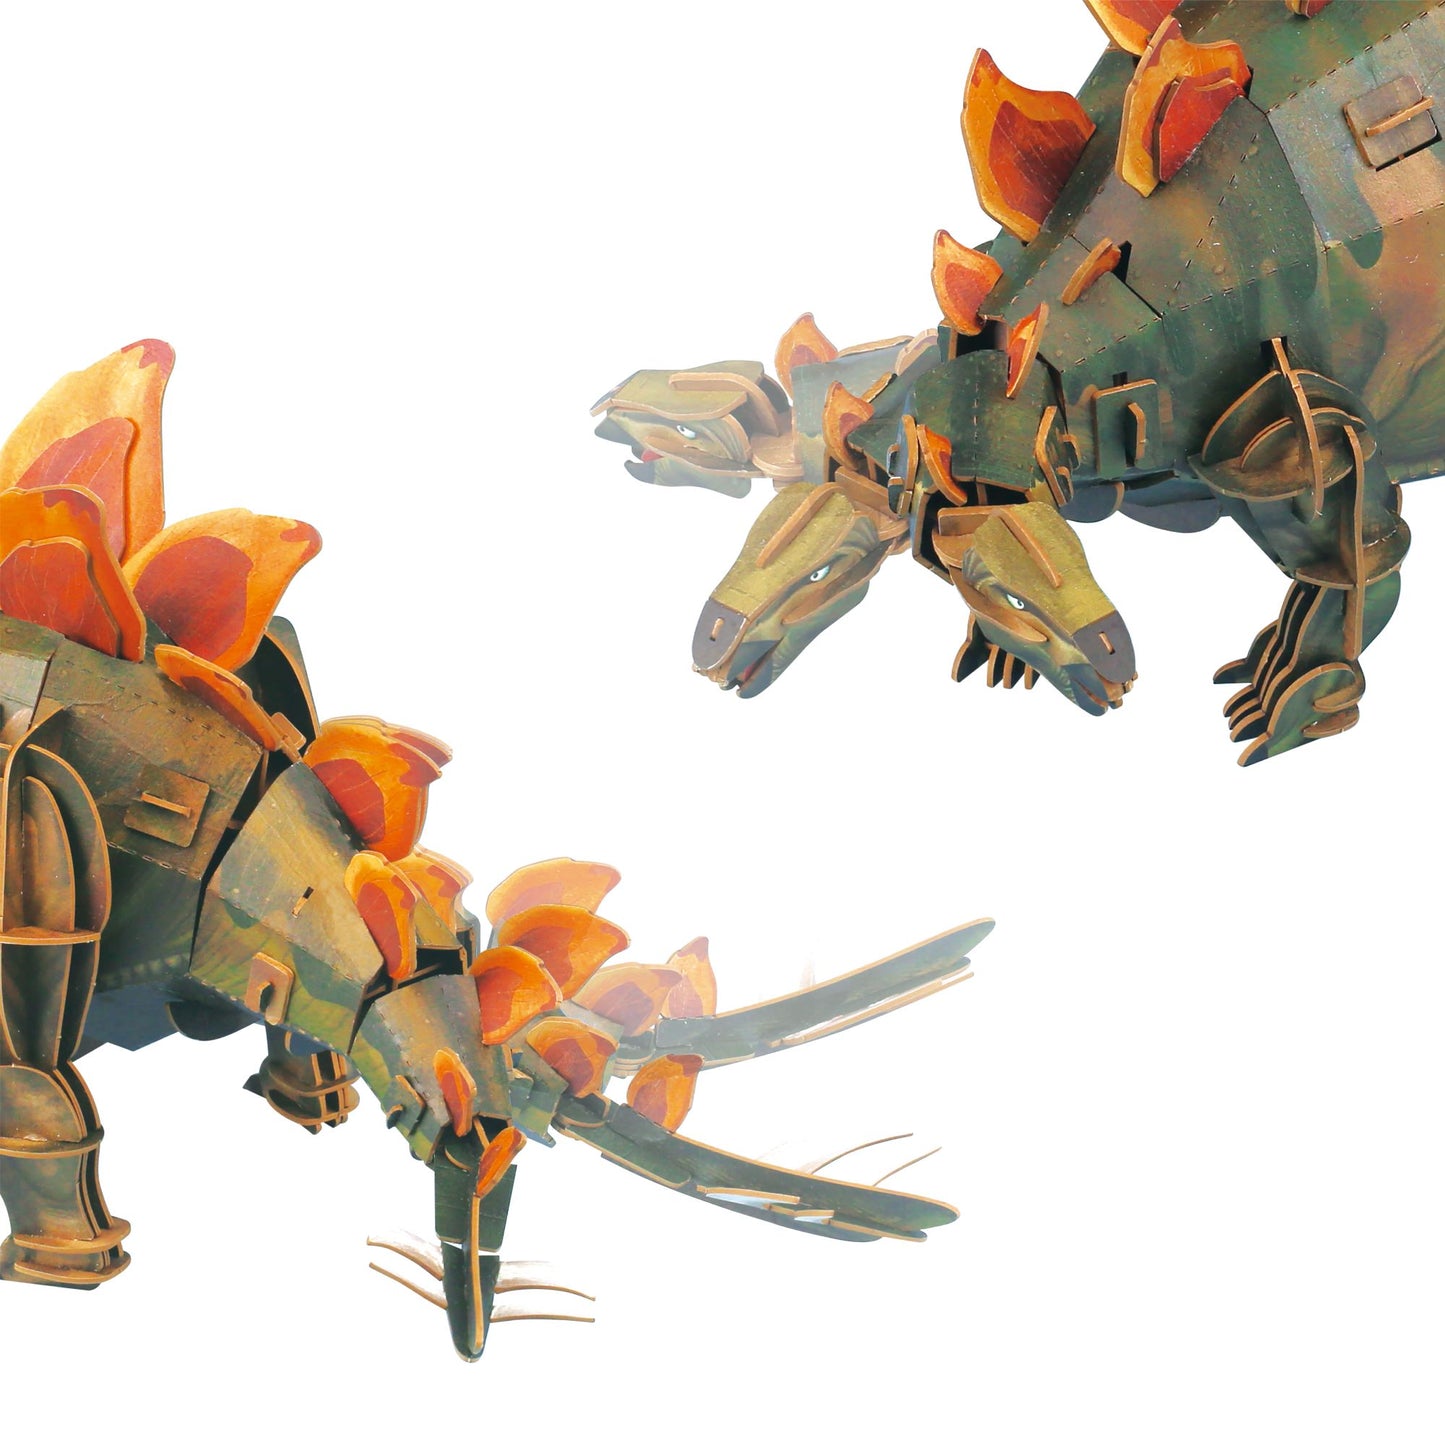 mierEdu 3D Puzzle Stegosaurus einstellbar, Reise zurück in die Zeit der Dinosaurier mit unserem anpassbaren 3D Puzzle